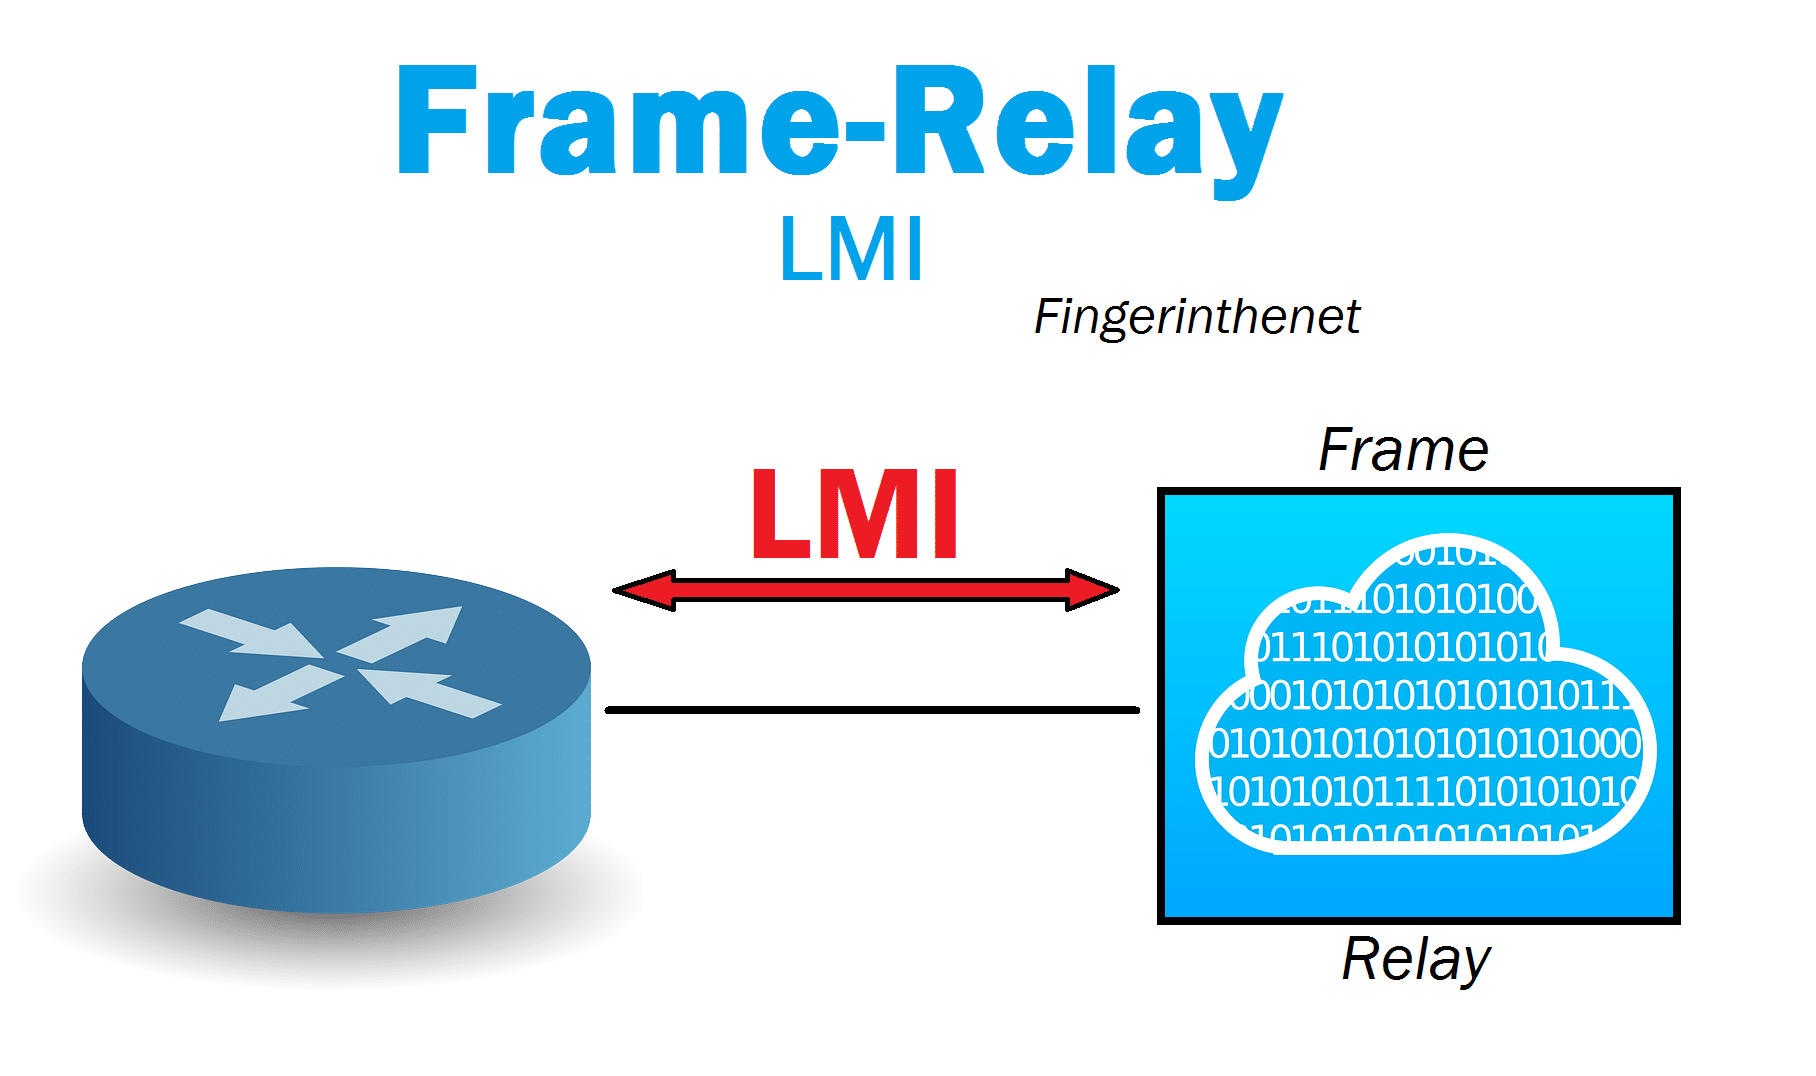 Frame-Relay LMI